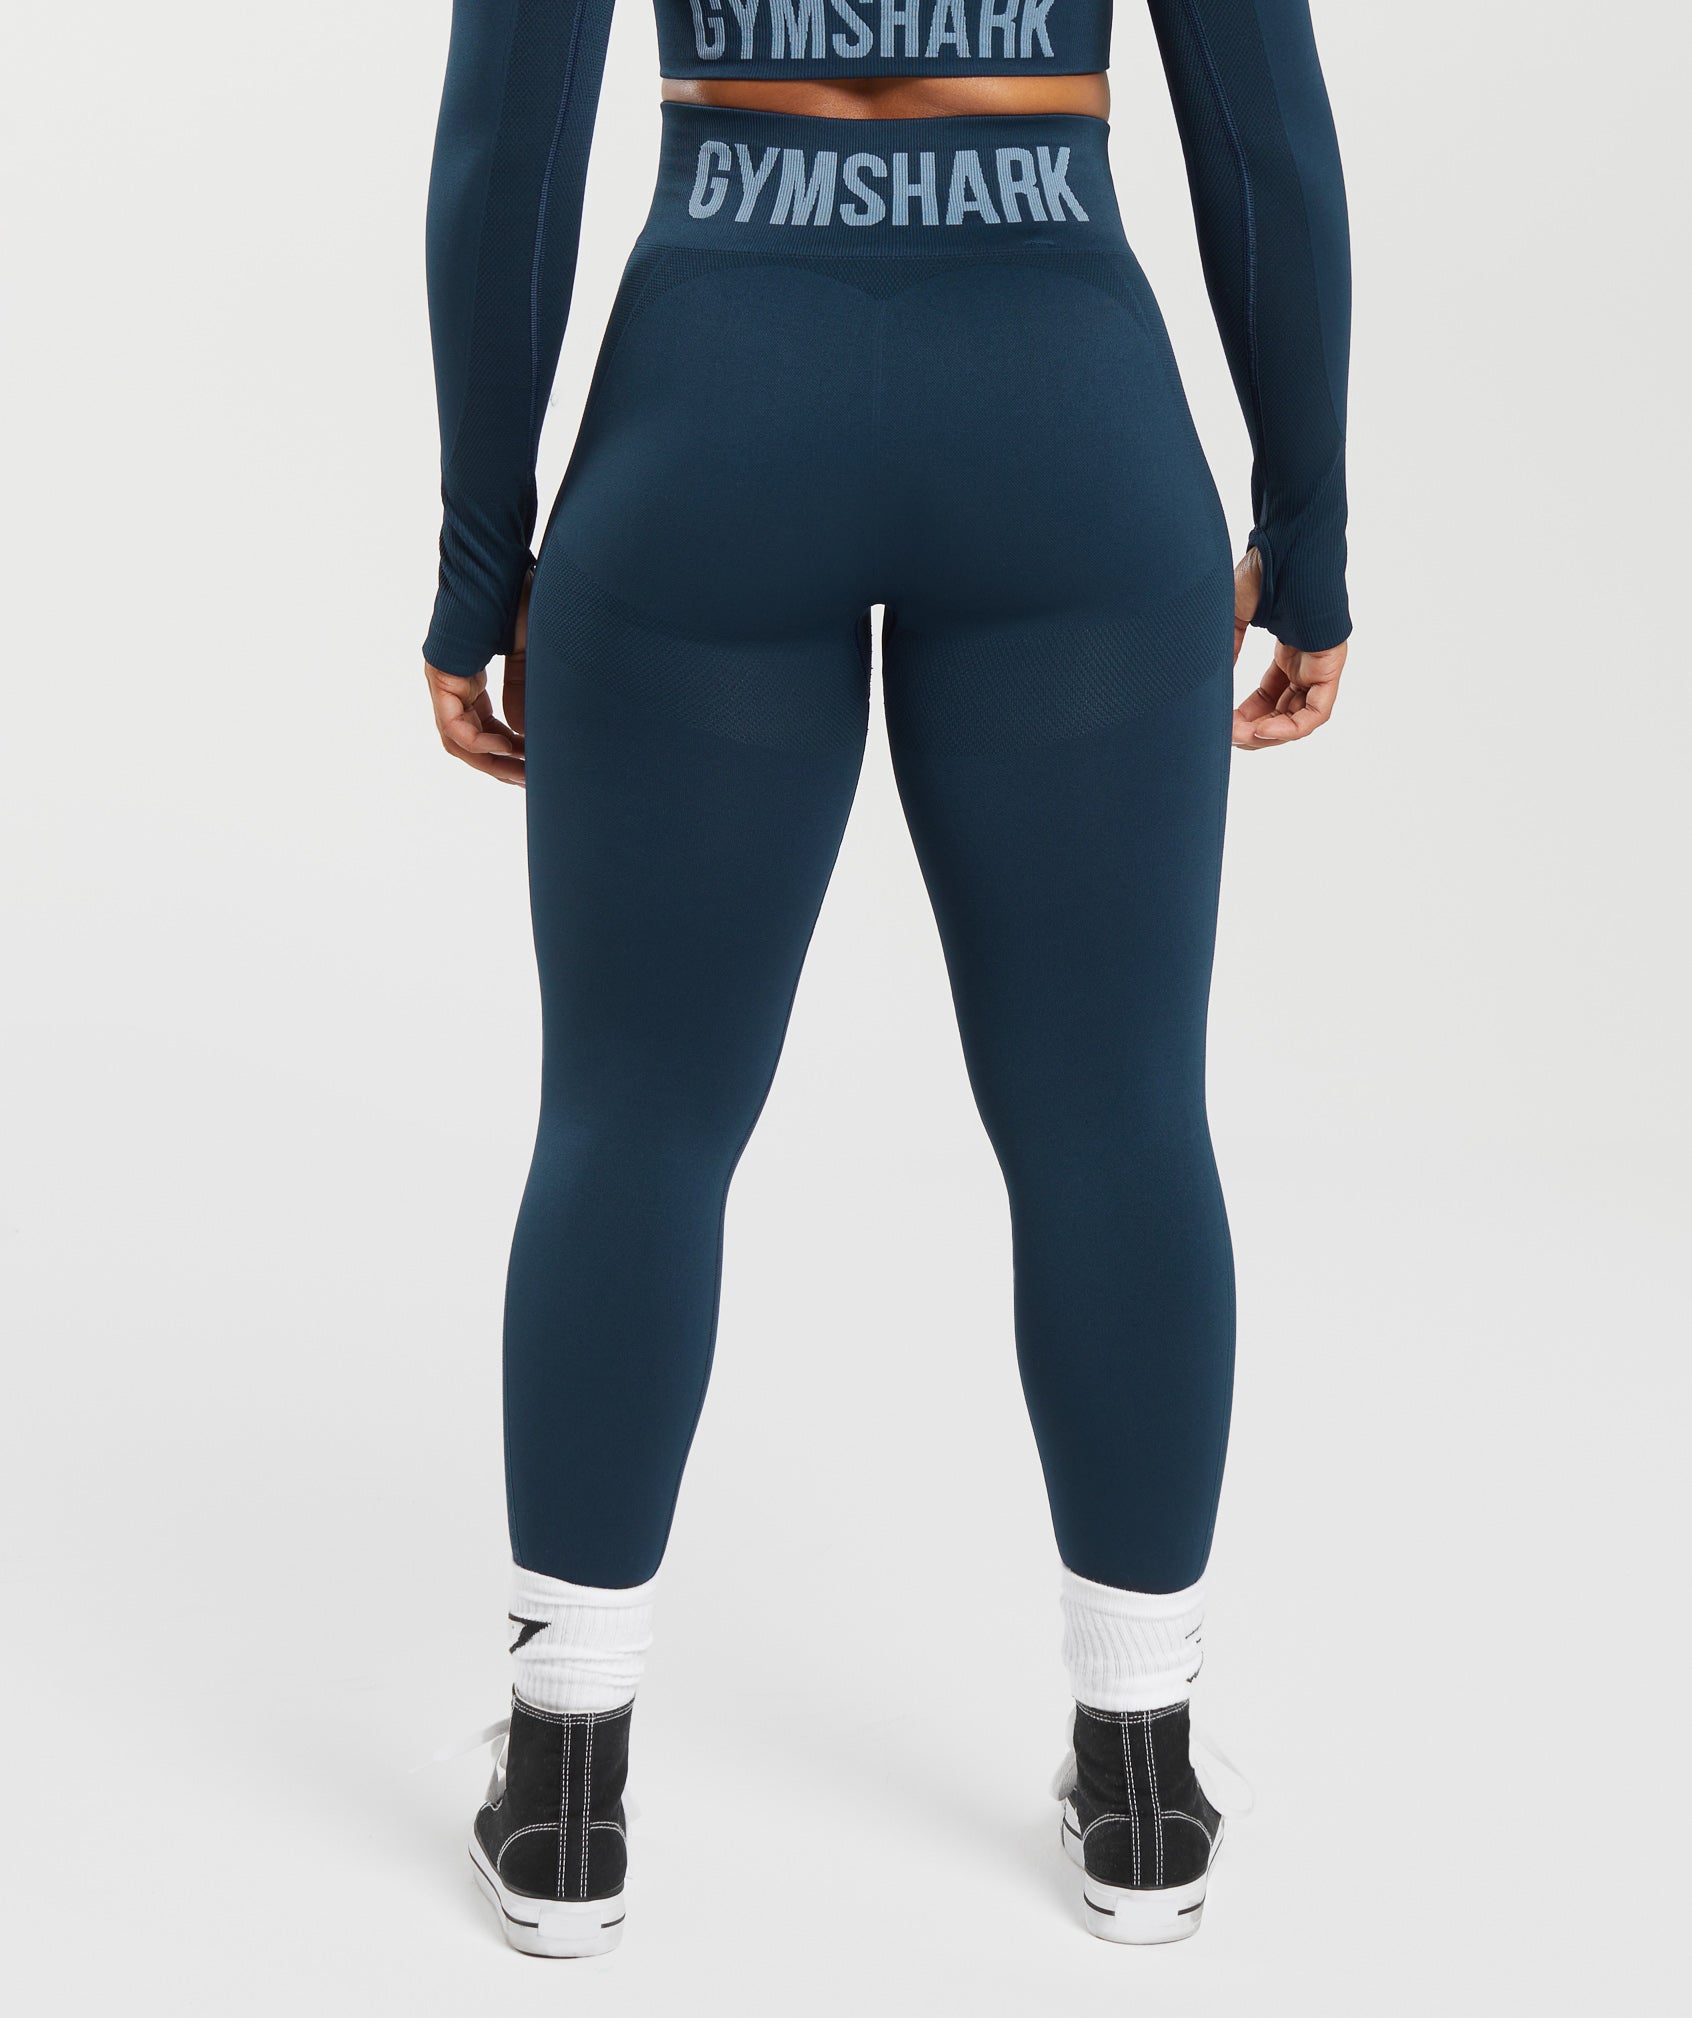 Gymshark Flex High Waisted Leggings - Navy/Denim Blue